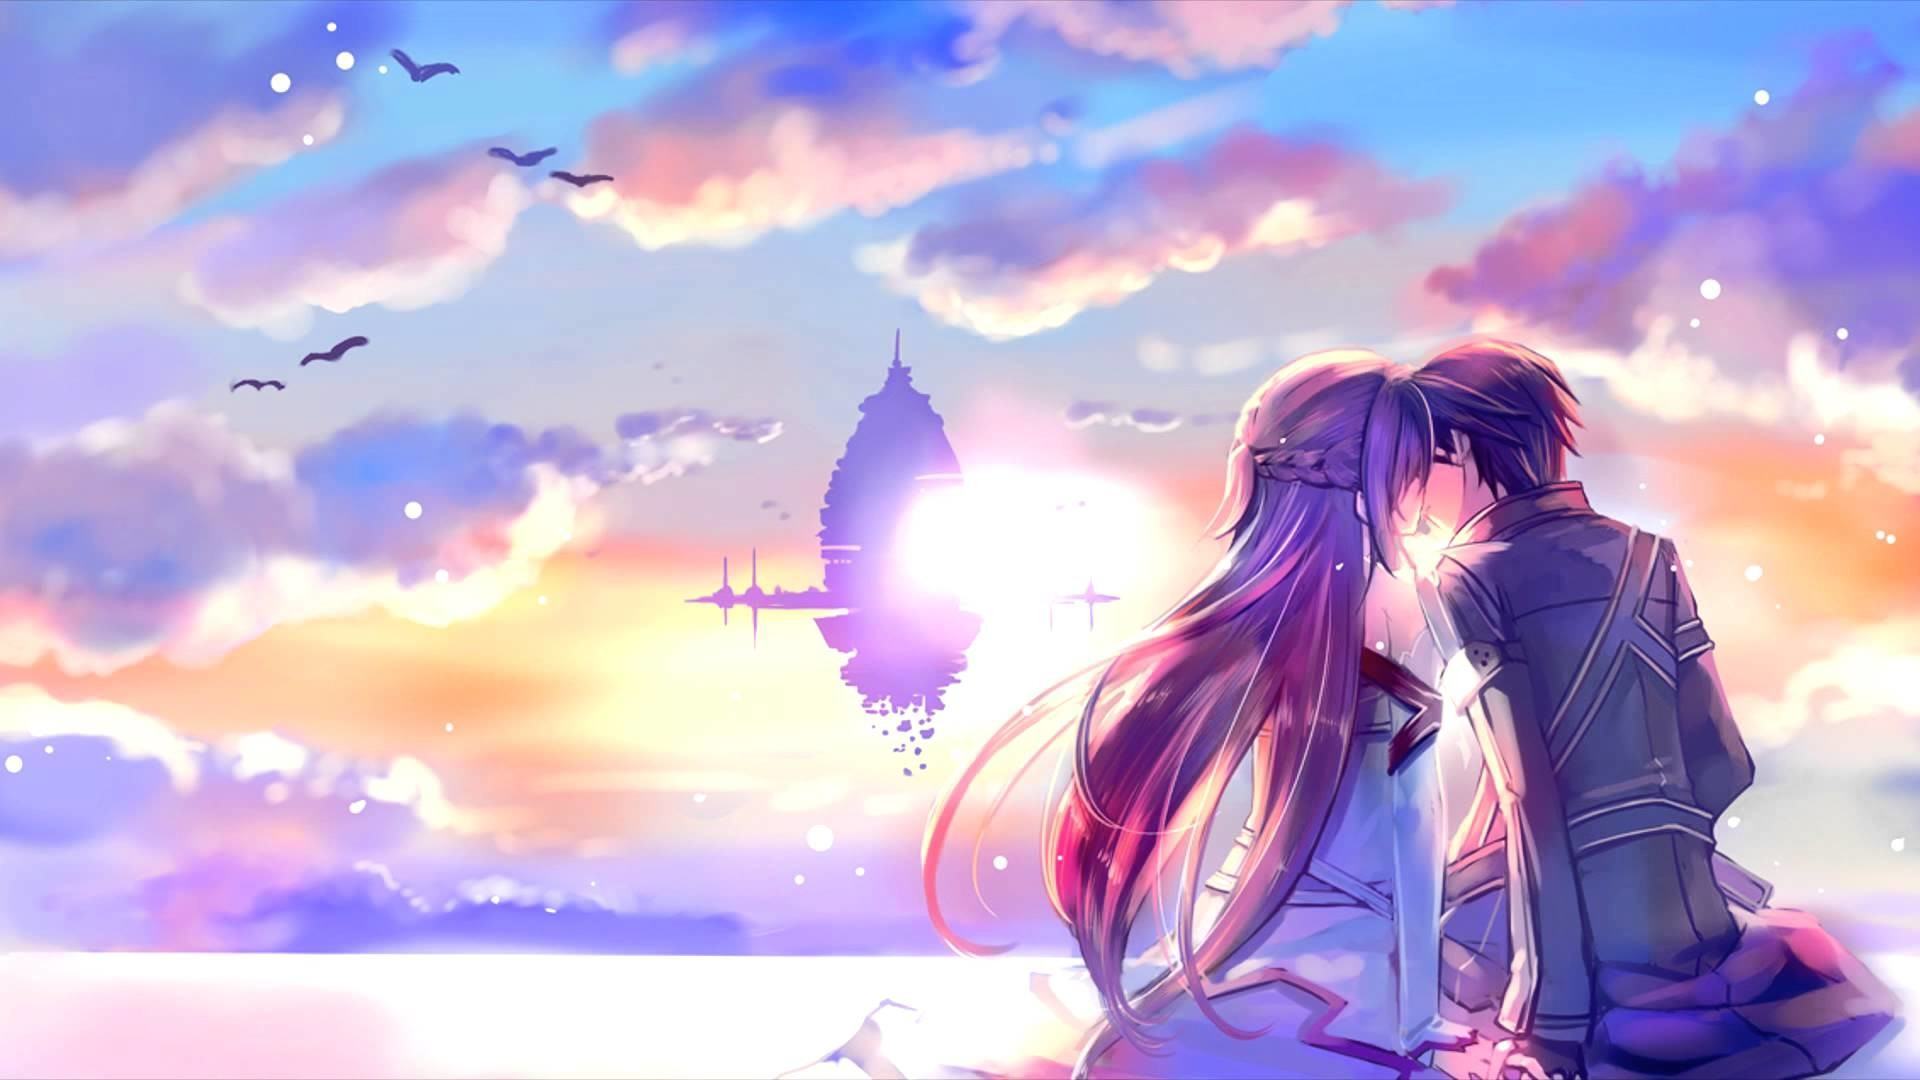 Anime tình yêu hình nền sẽ khiến trái tim bạn rung động với những cảnh tình cảm ngọt ngào. Hình ảnh này sẽ giúp bạn thoát khỏi những căng thẳng trong công việc và cảm nhận được một thế giới mới đầy tình yêu. Hãy chọn Anime tình yêu làm hình nền bạn nhé!